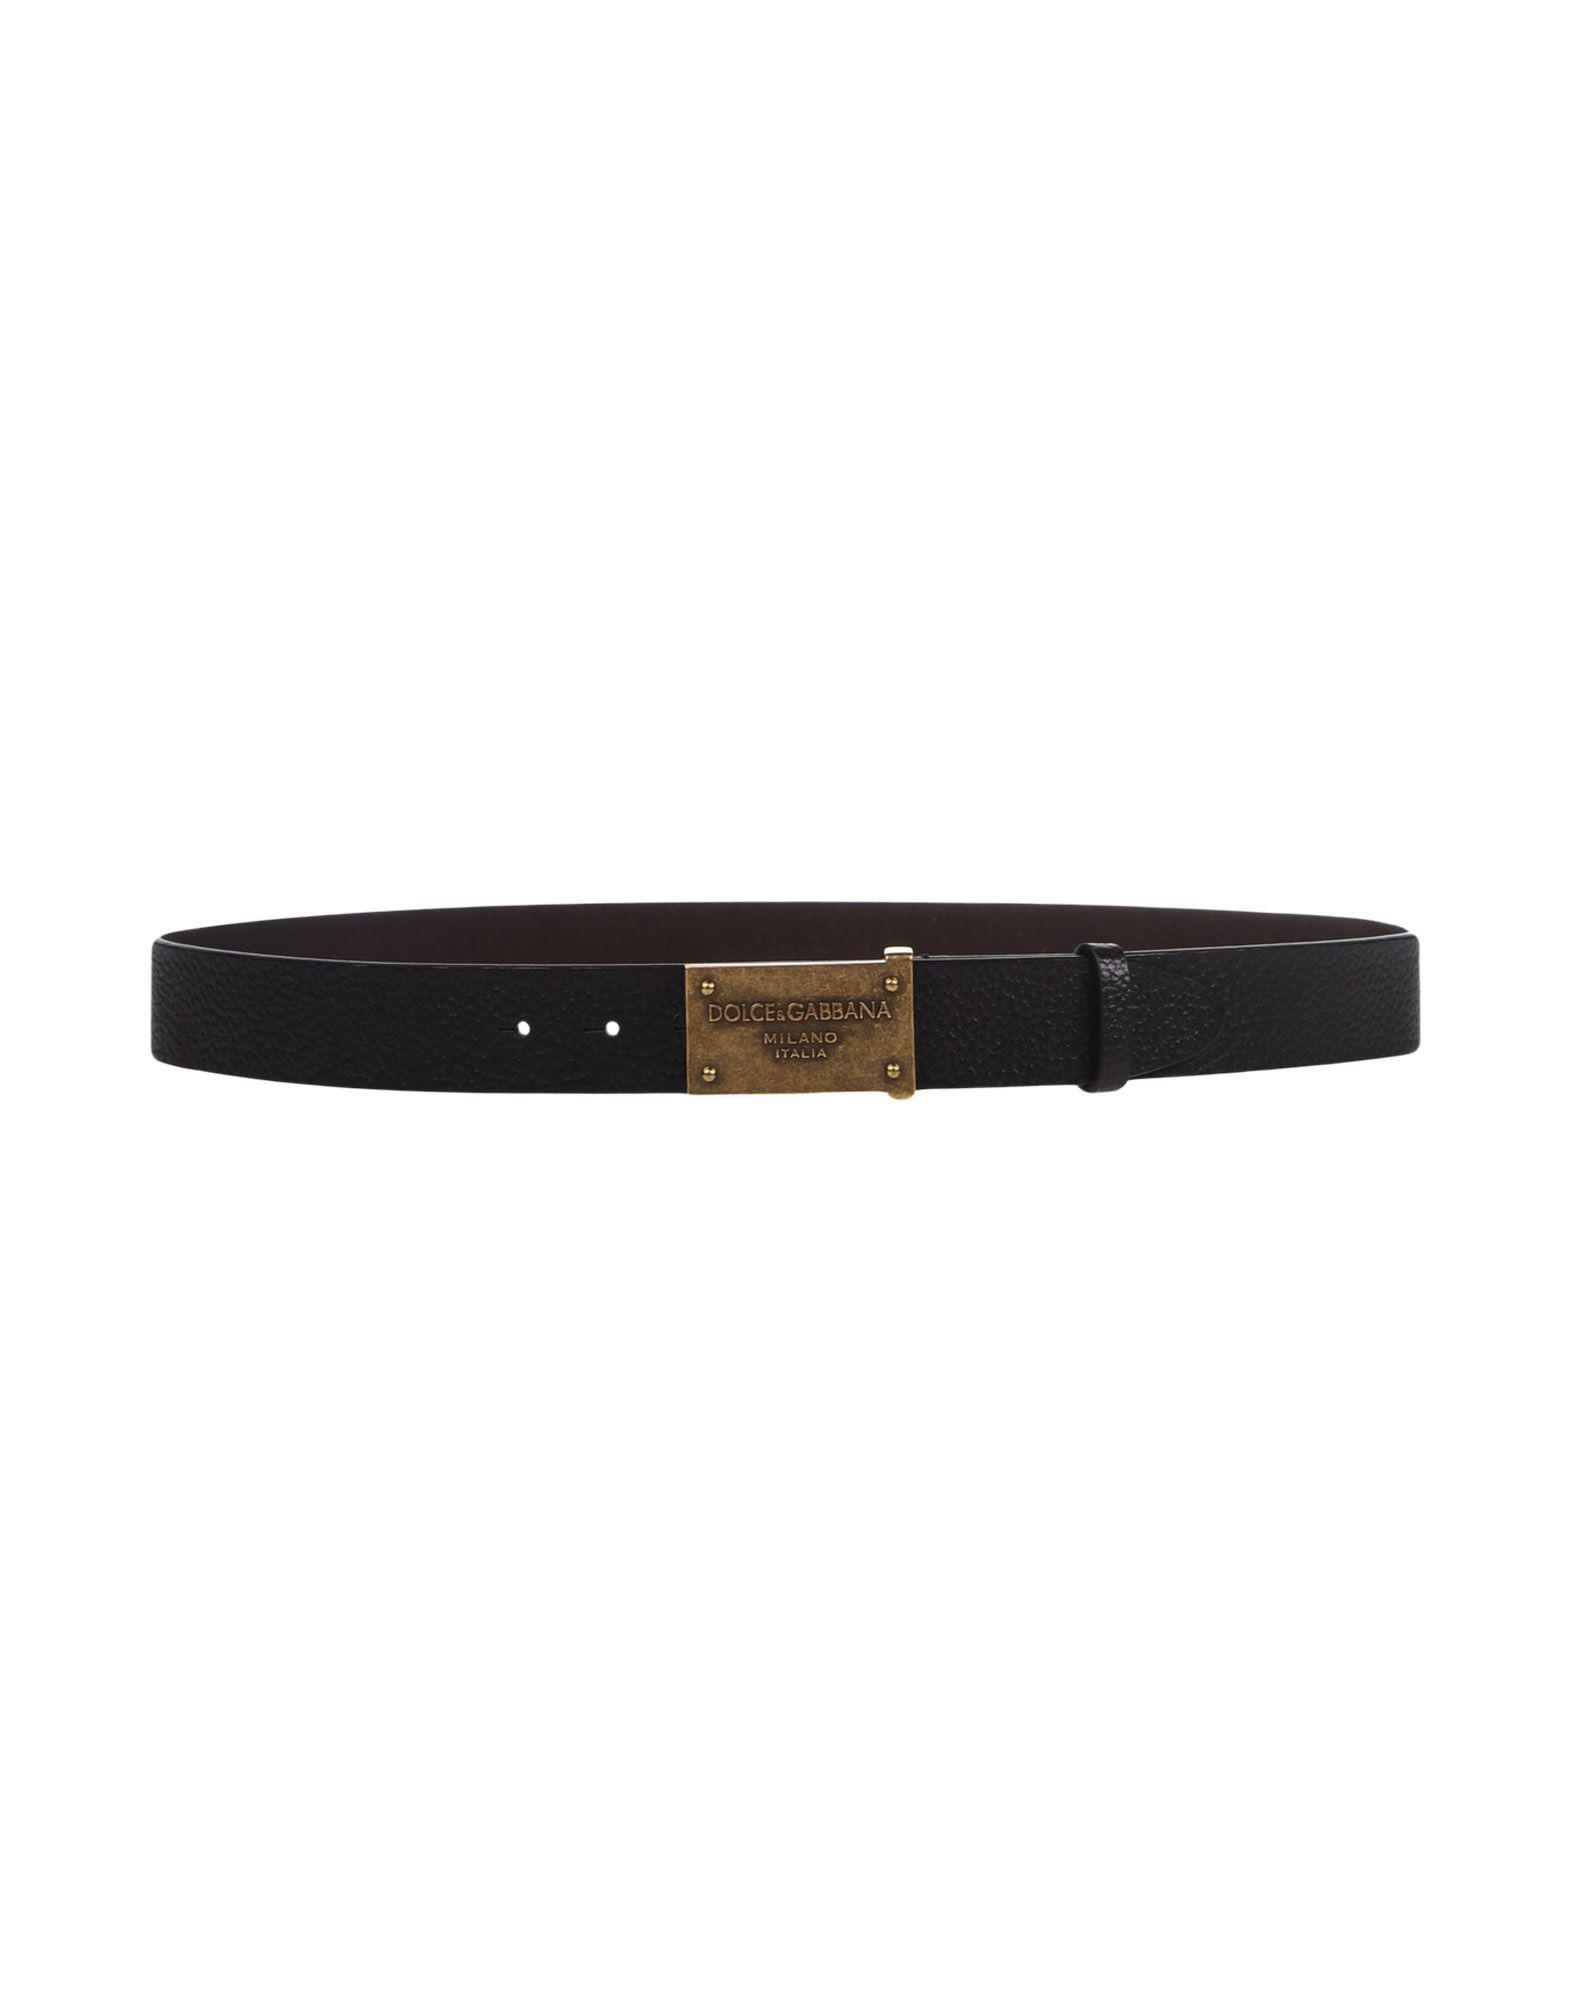 Dolce & Gabbana Leather Belt in Dark Brown (Brown) for Men - Lyst